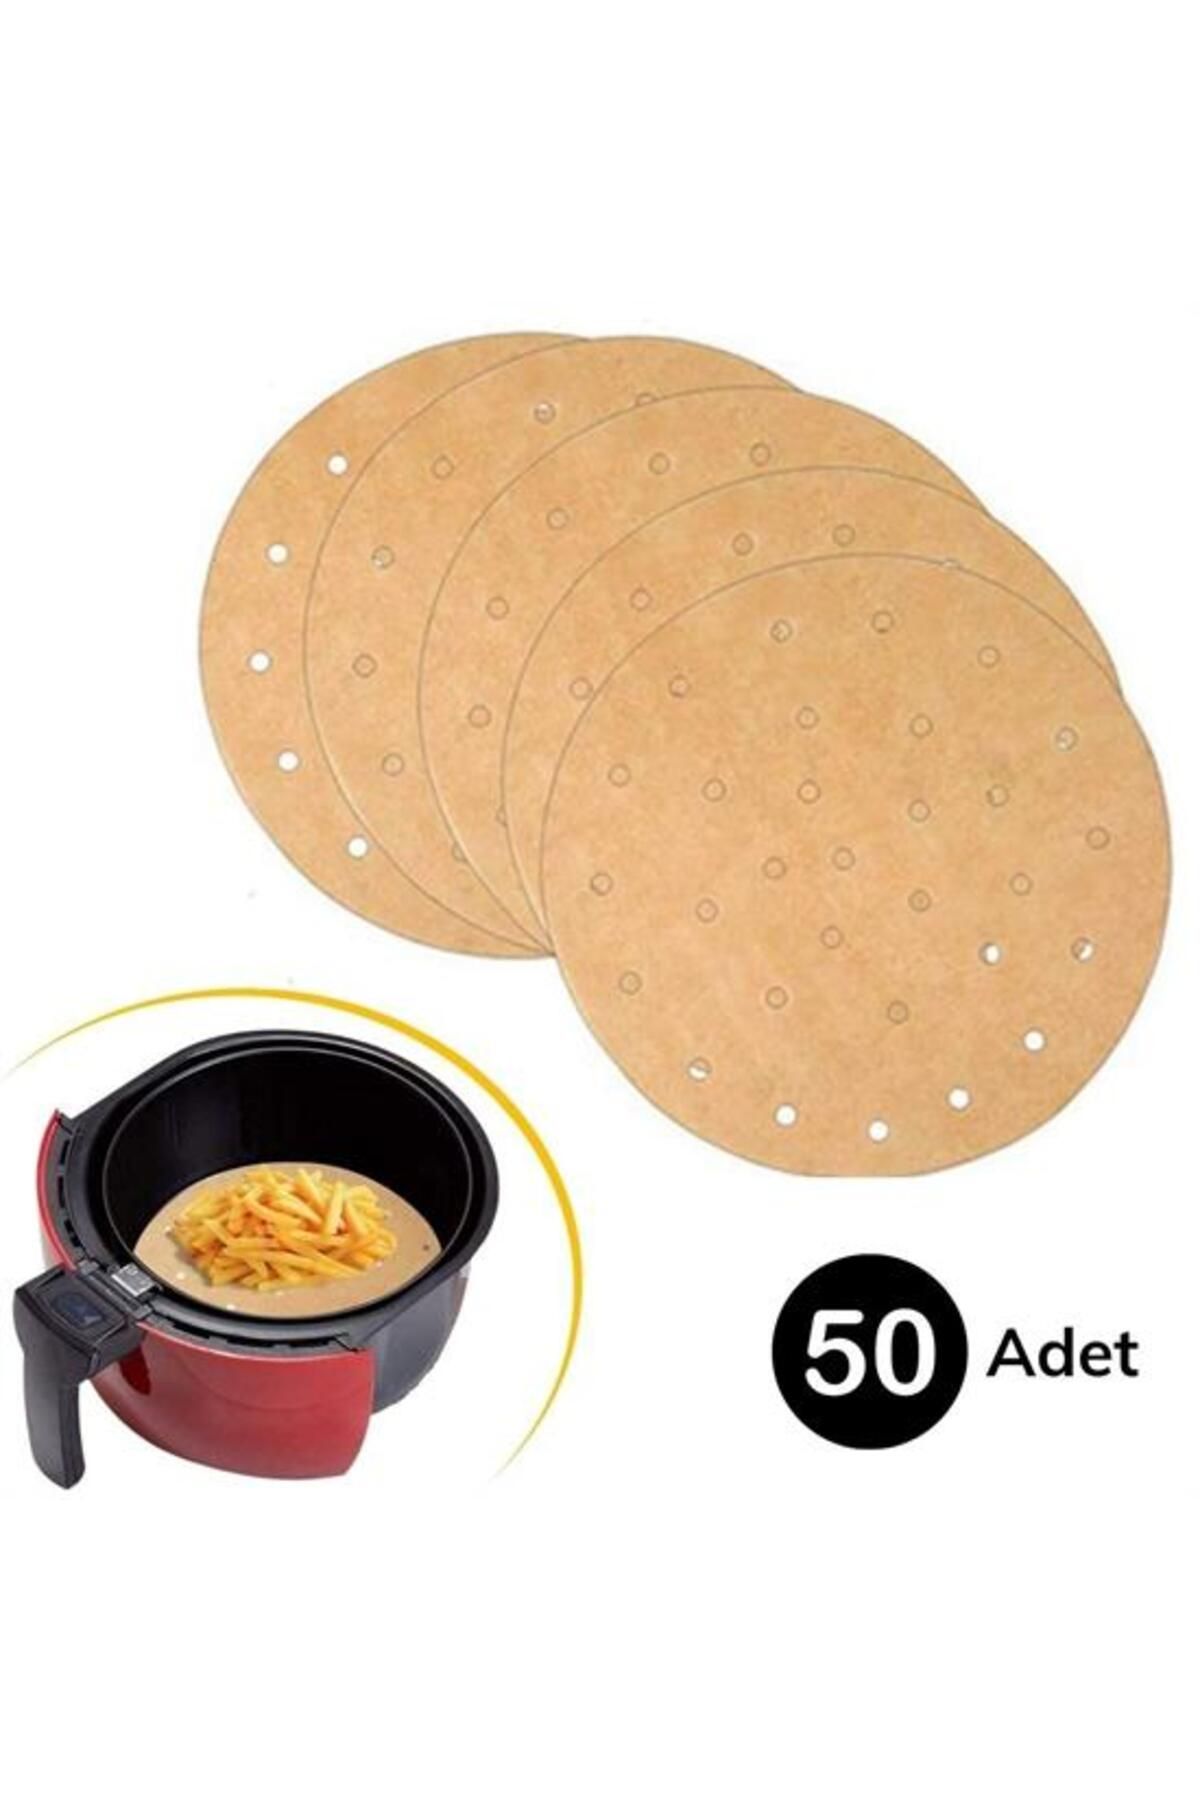 KAYAMU 50 Adet Air Fryer Pişirme Kağıdı Tek Kullanımlık Gıda Pişirme Kağıdı Delikli Yuvarlak Model